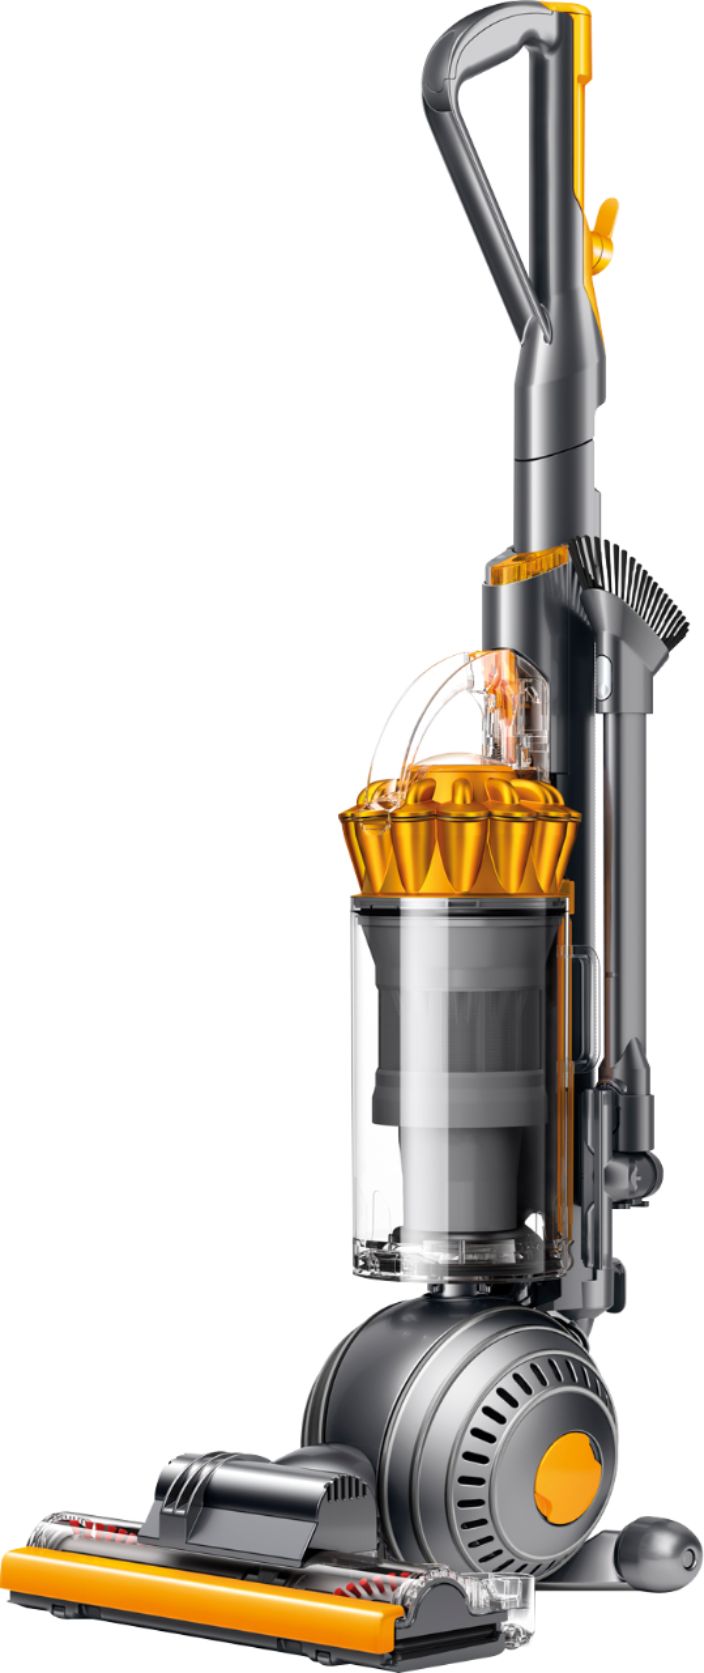 Angle View: Dyson - V8 Cordless Stick Vacuum - Iron